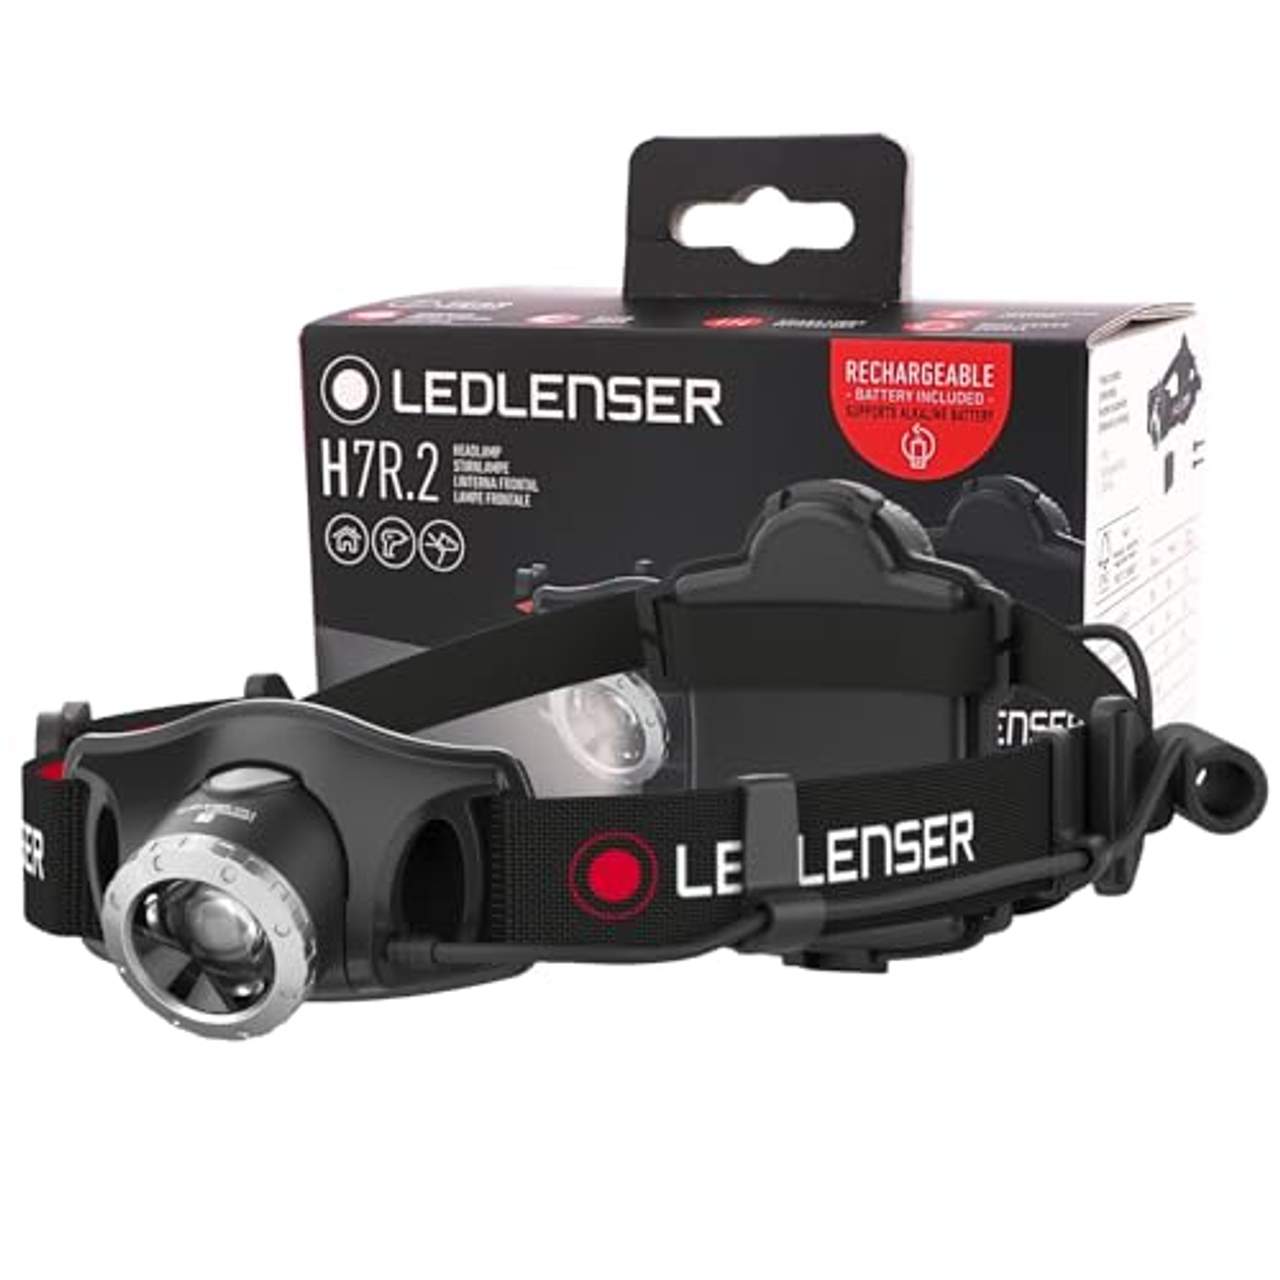 LED Lenser H7R.2 